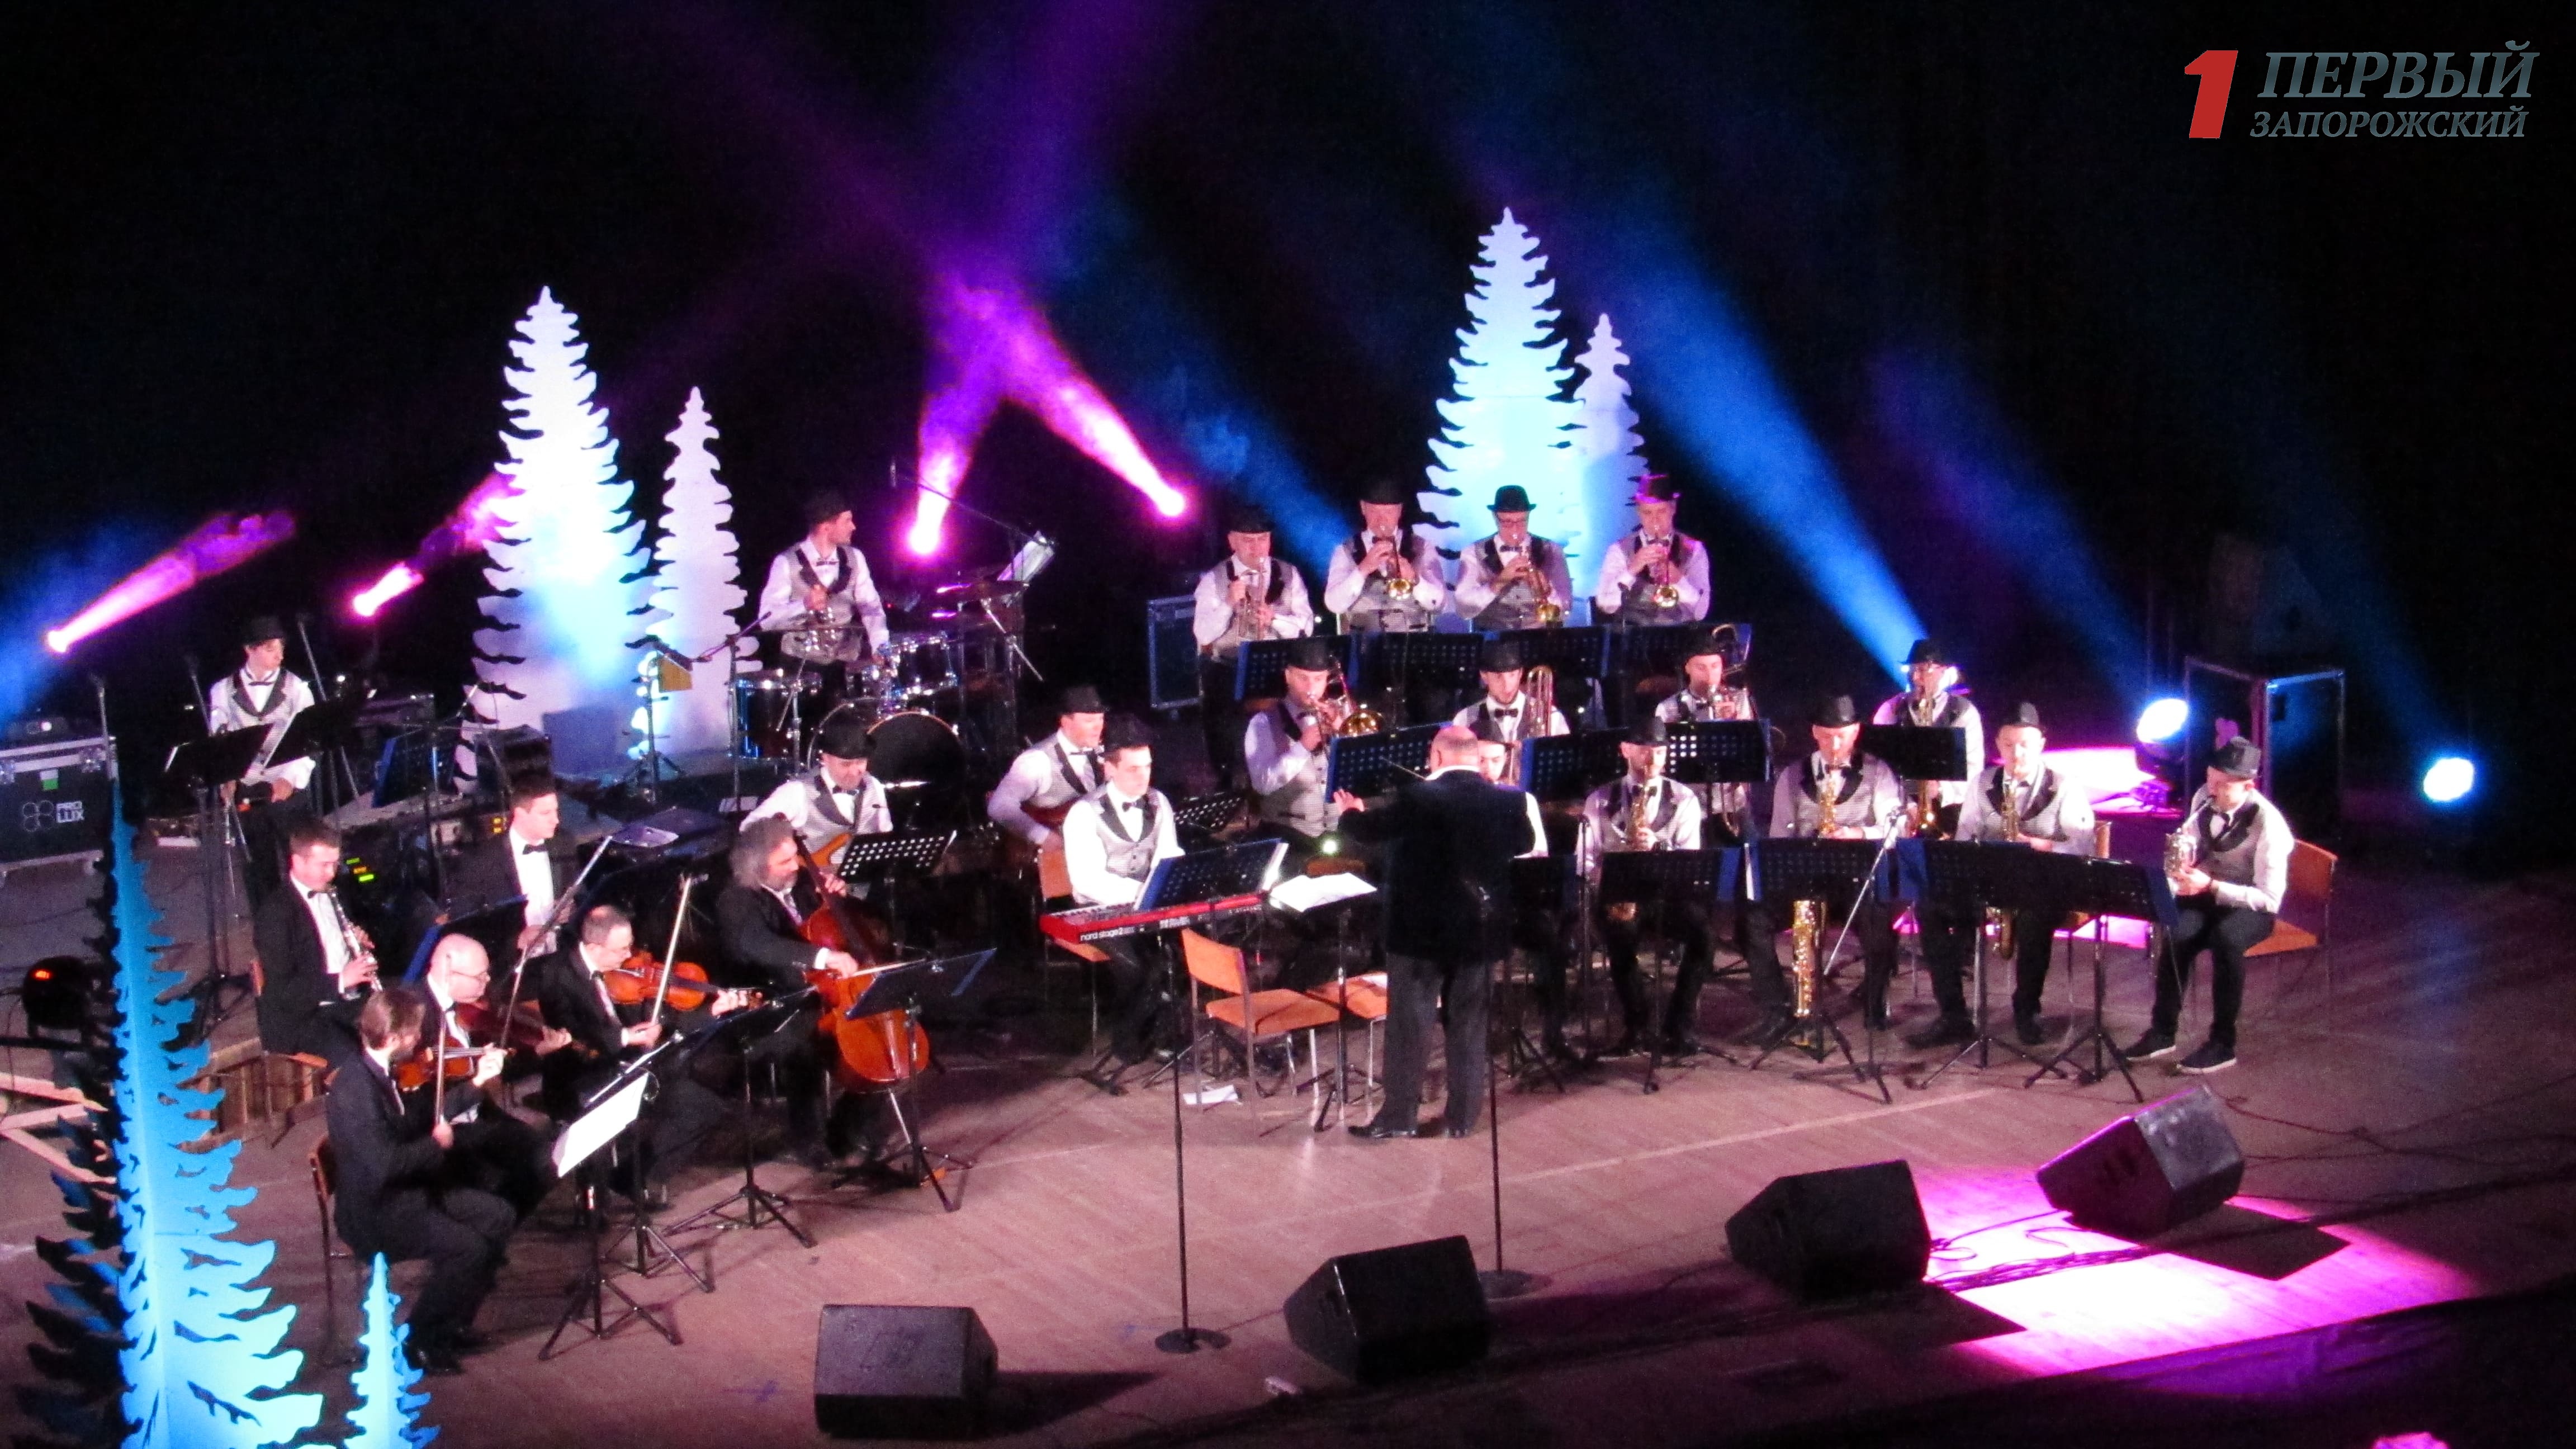 Запорожцы «погрузились» в новогоднюю атмосферу вместе с львовским оркестром 